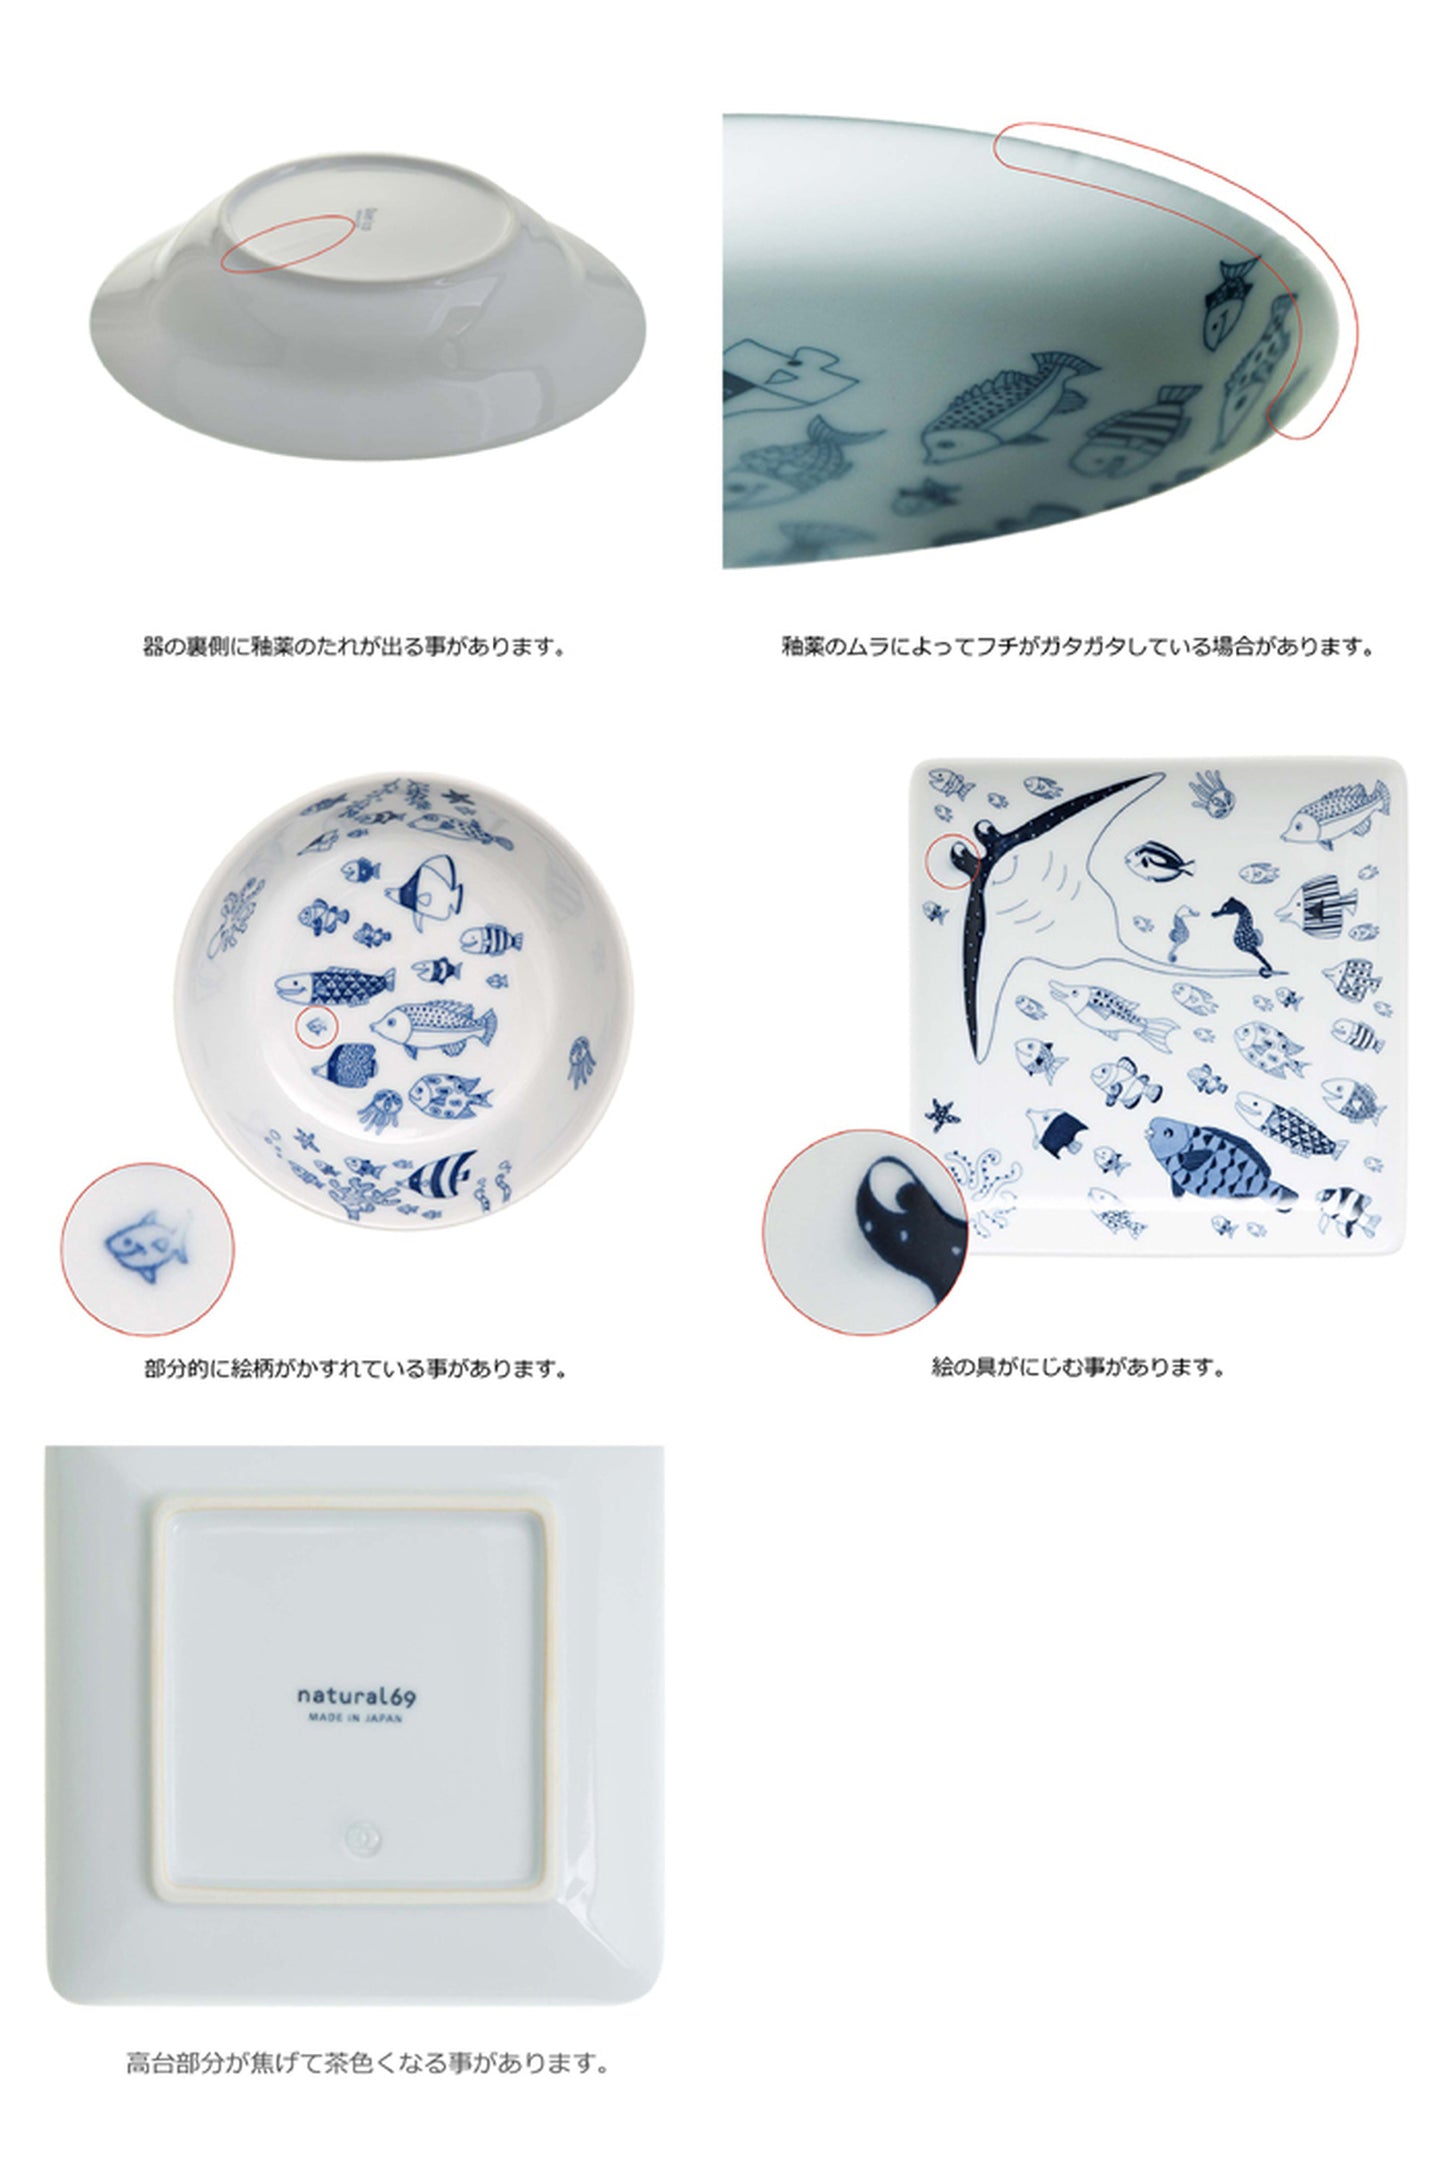 [natural69] [Hasami ware] [cocomarine] [Long angle plate] Grilled plate Rectangle grilled plate Long plate Natural rock Cocomarine plate